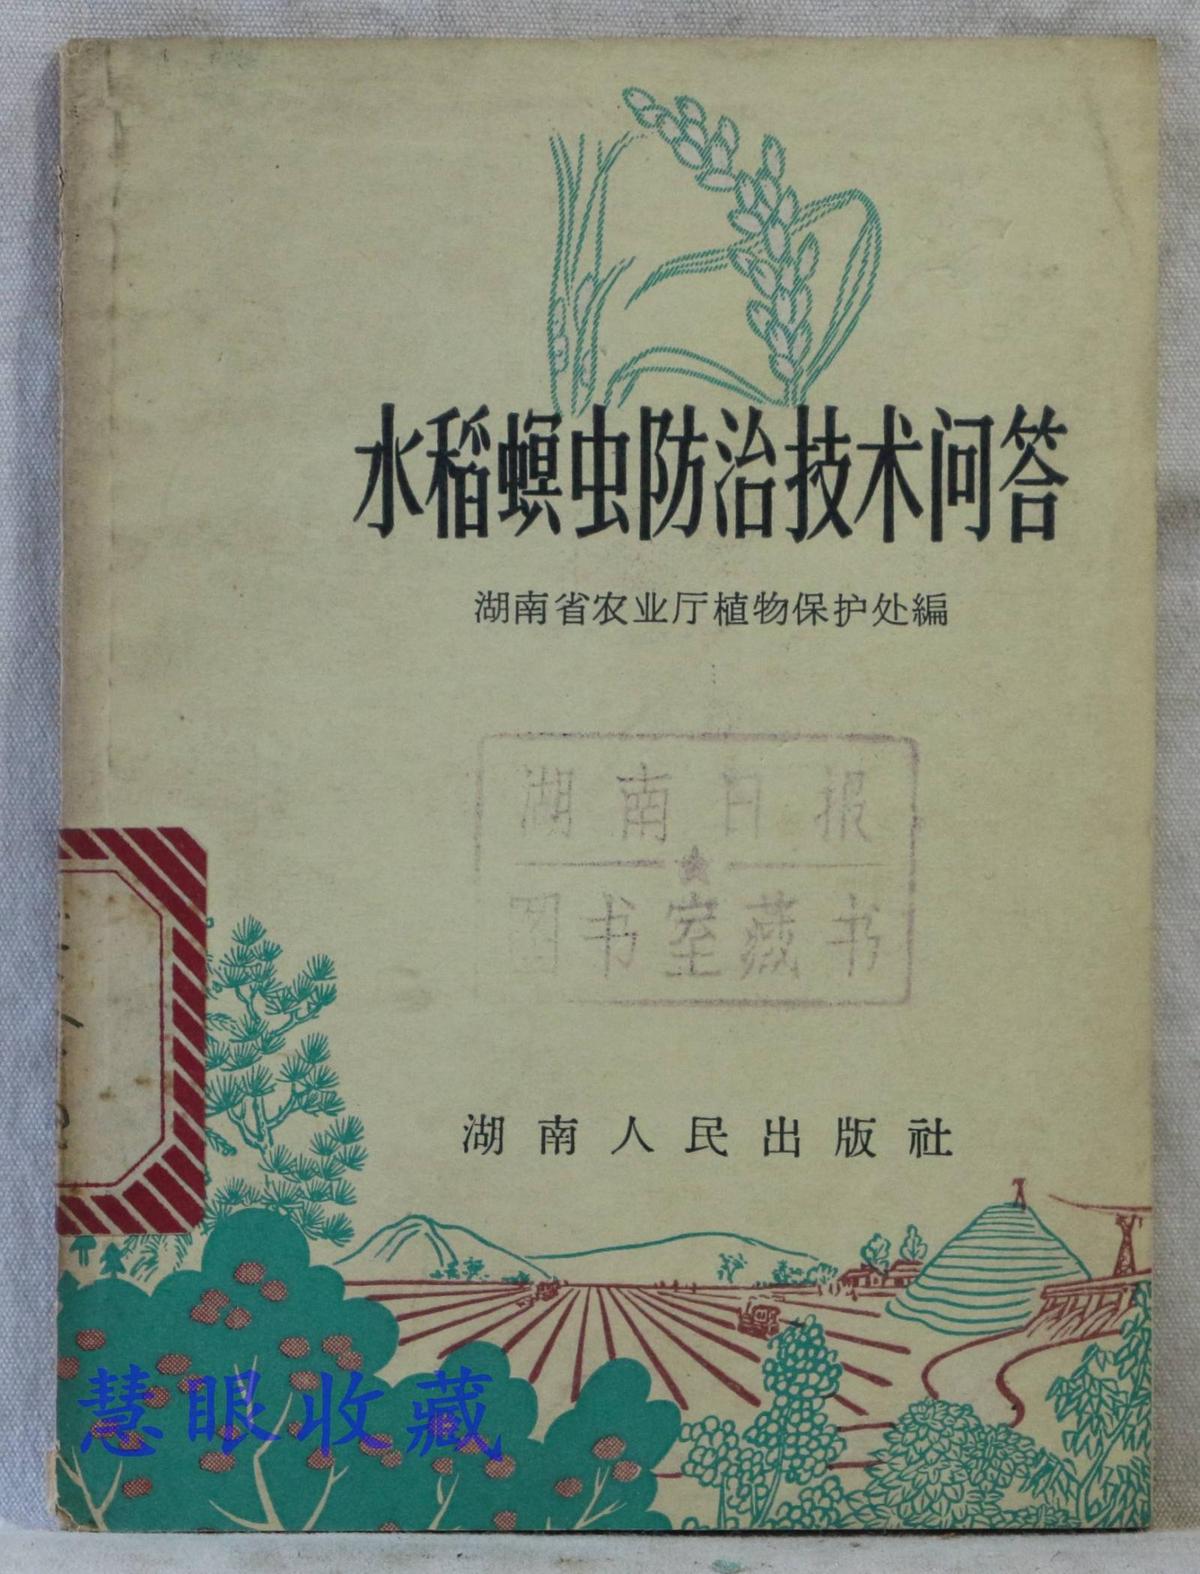 水稻螟虫纺织技术问答  湖南省农业厅植物保护处编  湖南人民出版社